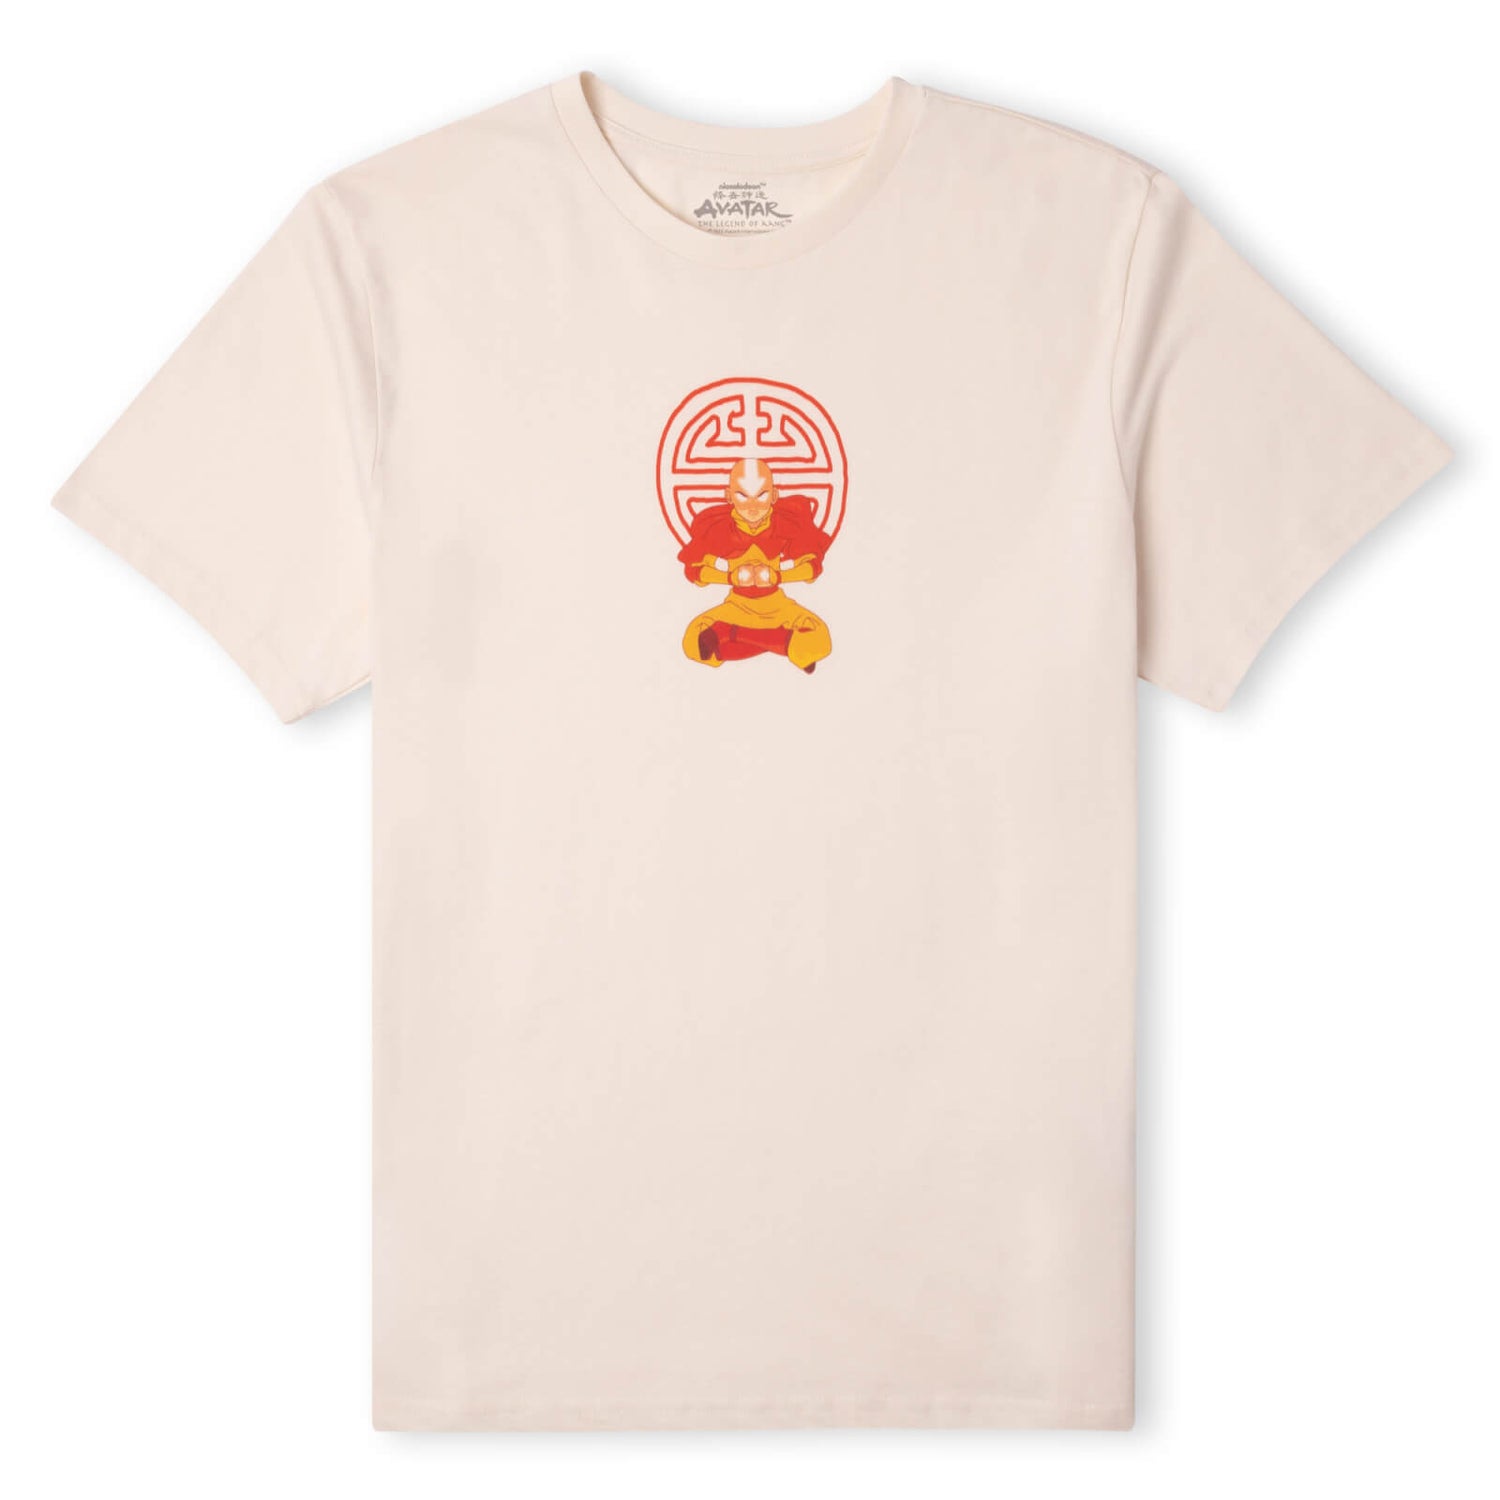 Avatar State Unisex T-Shirt - Cream